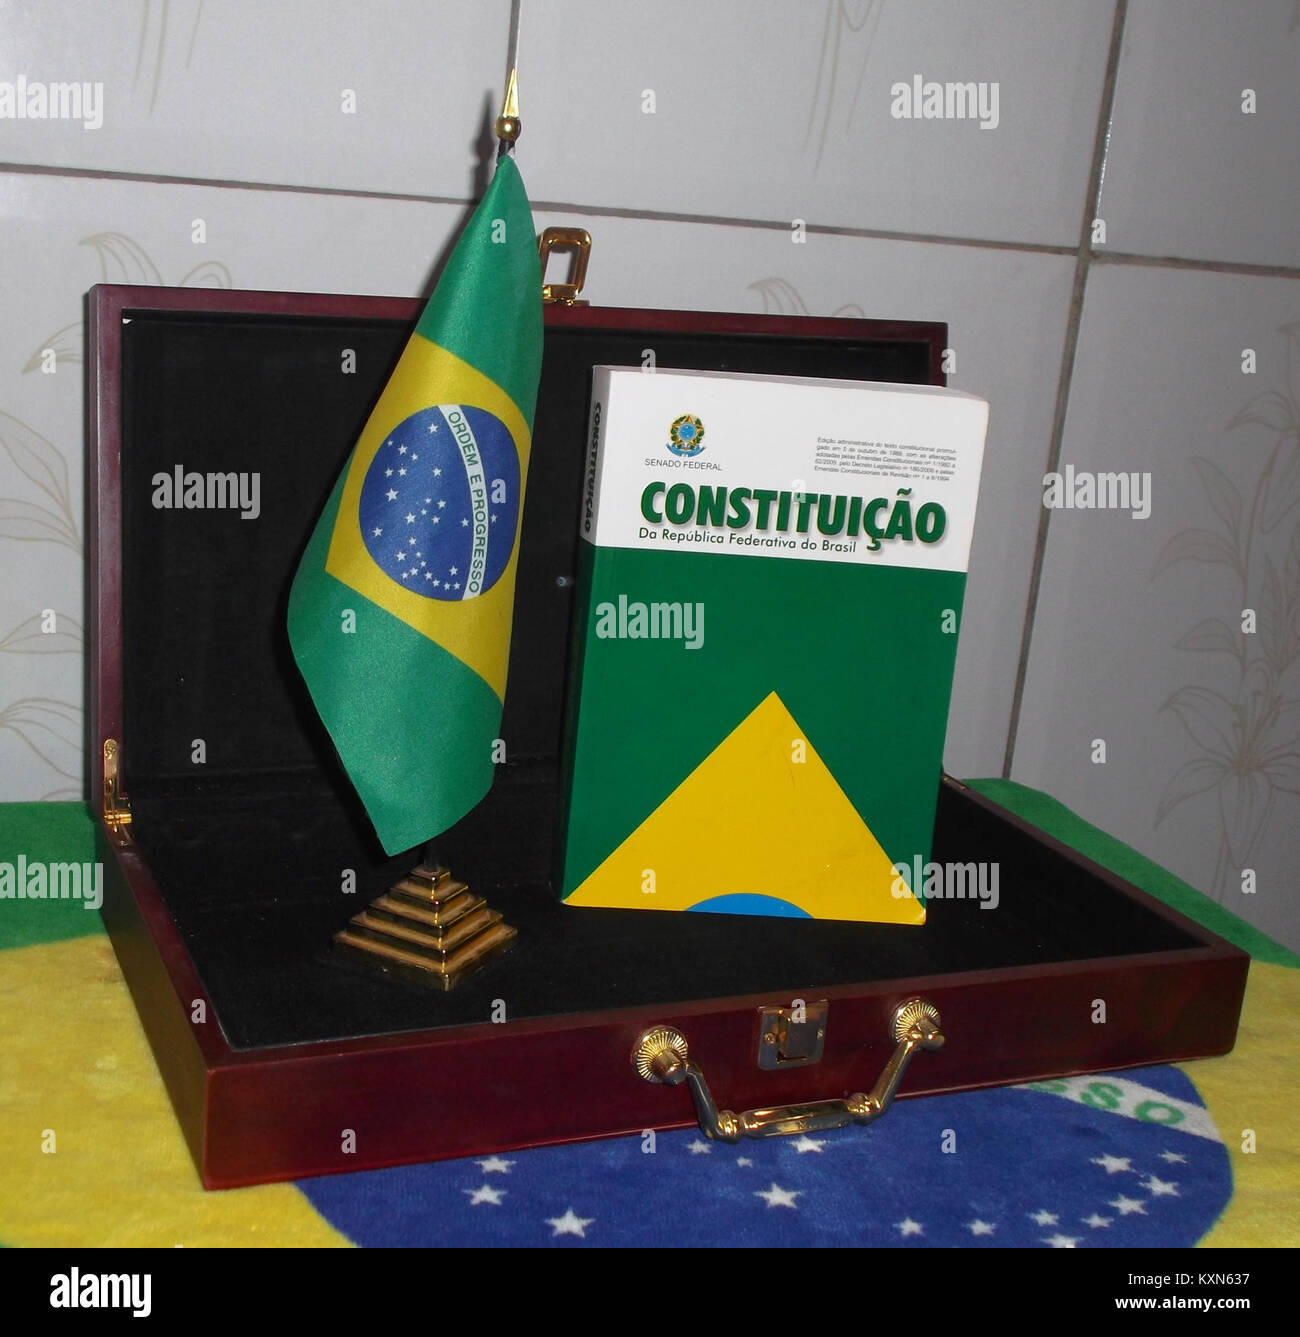 Bandeira do Brasil Constitição do Brasil Stock Photo